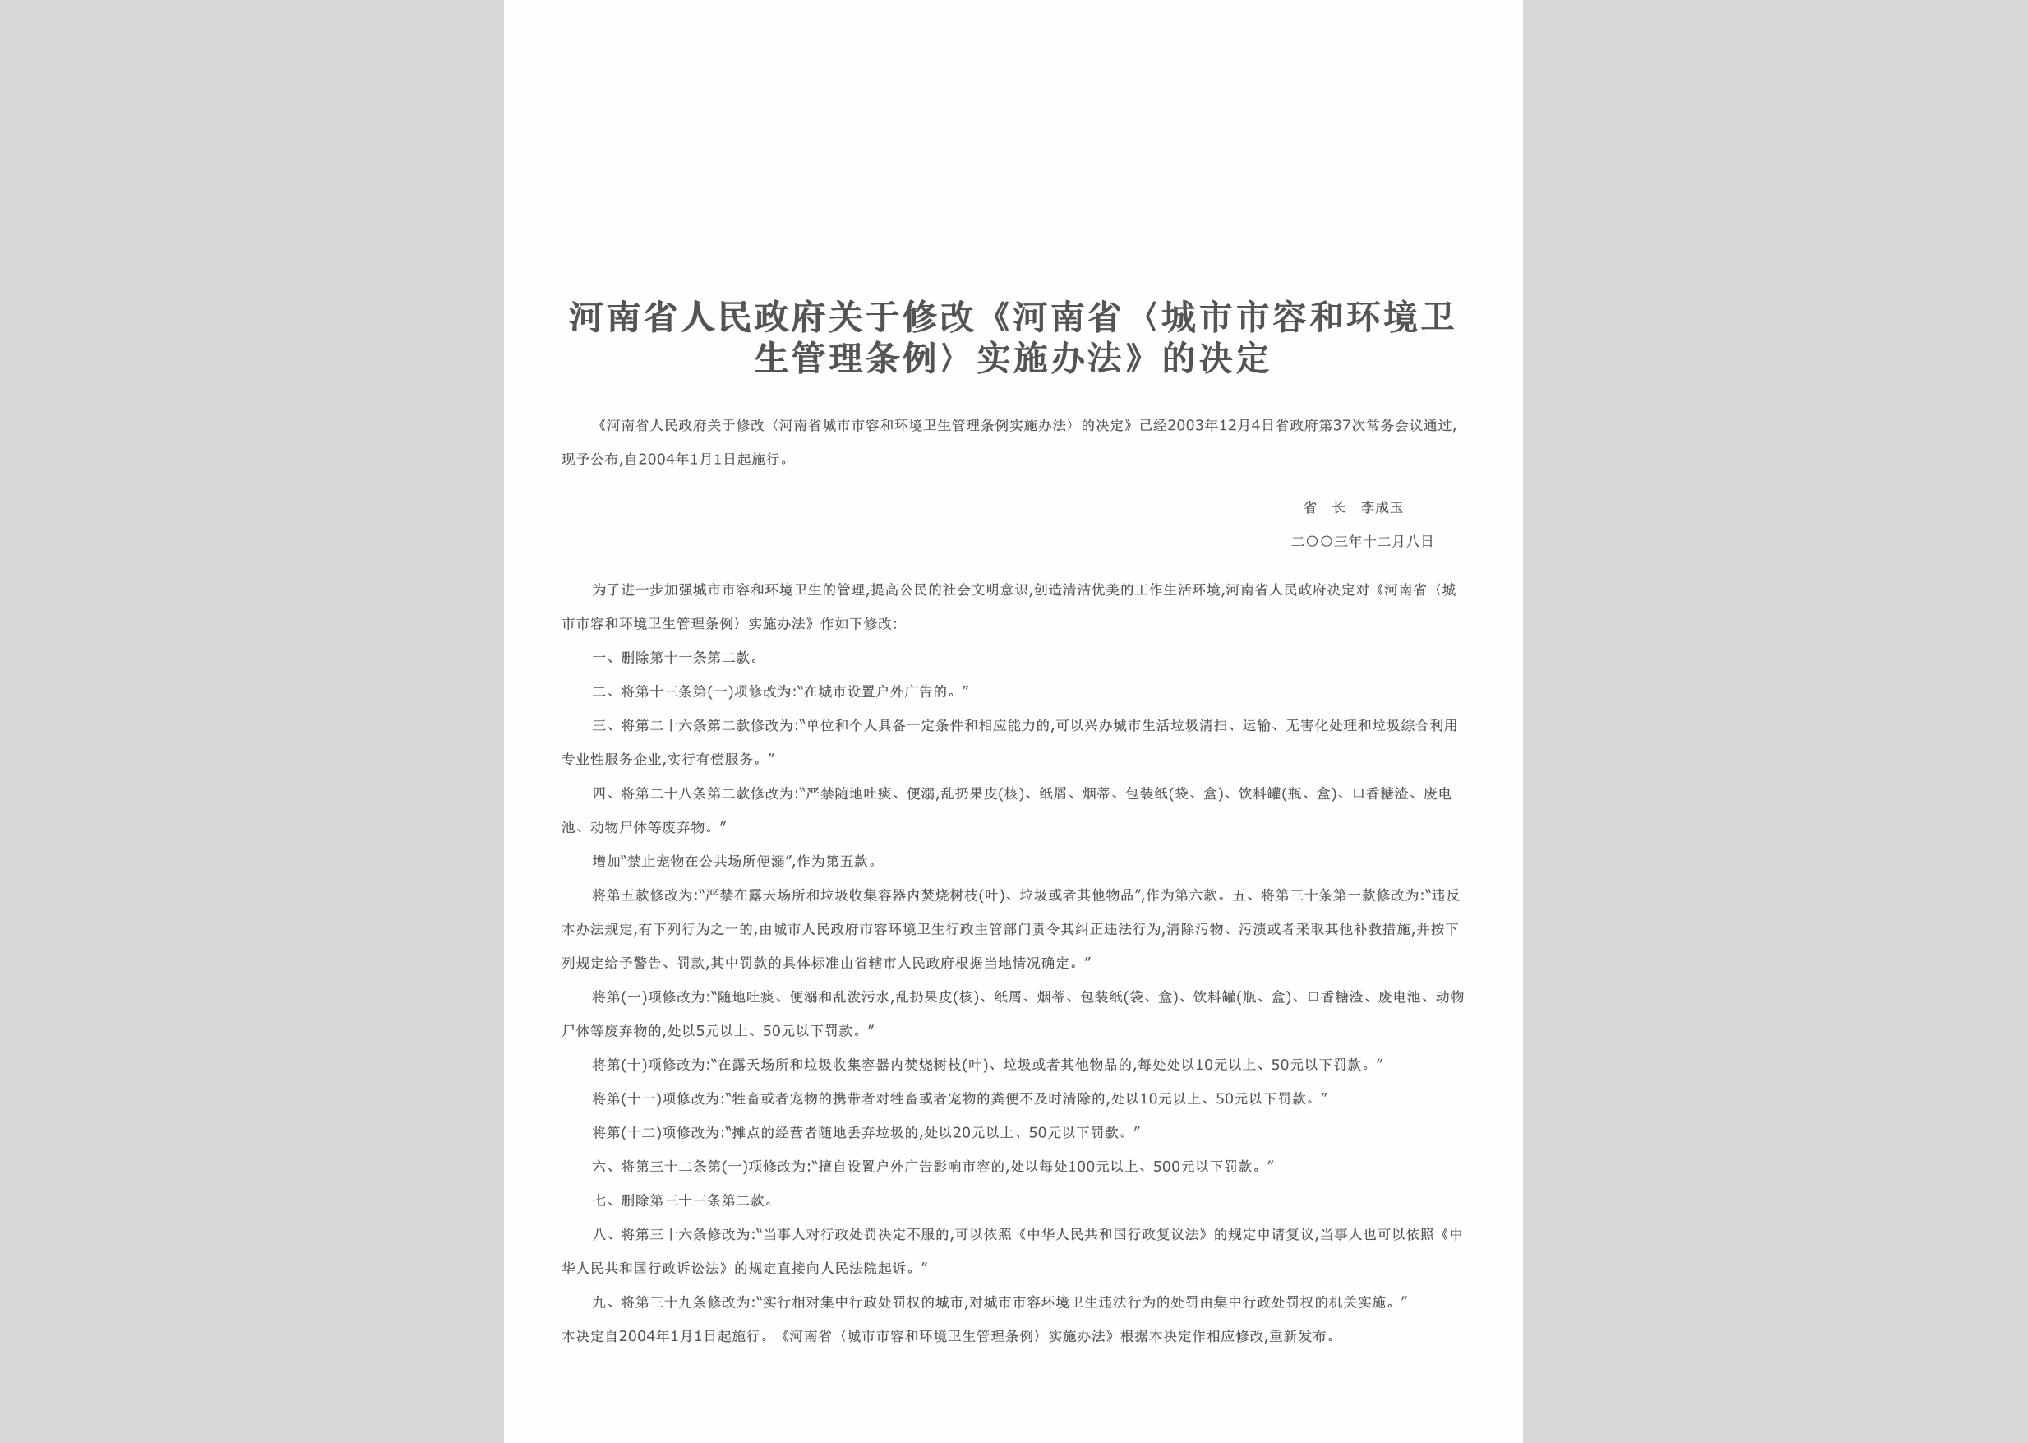 HEN-SRHJGLTL-2004：关于修改《河南省〈城市市容和环境卫生管理条例〉实施办法》的决定